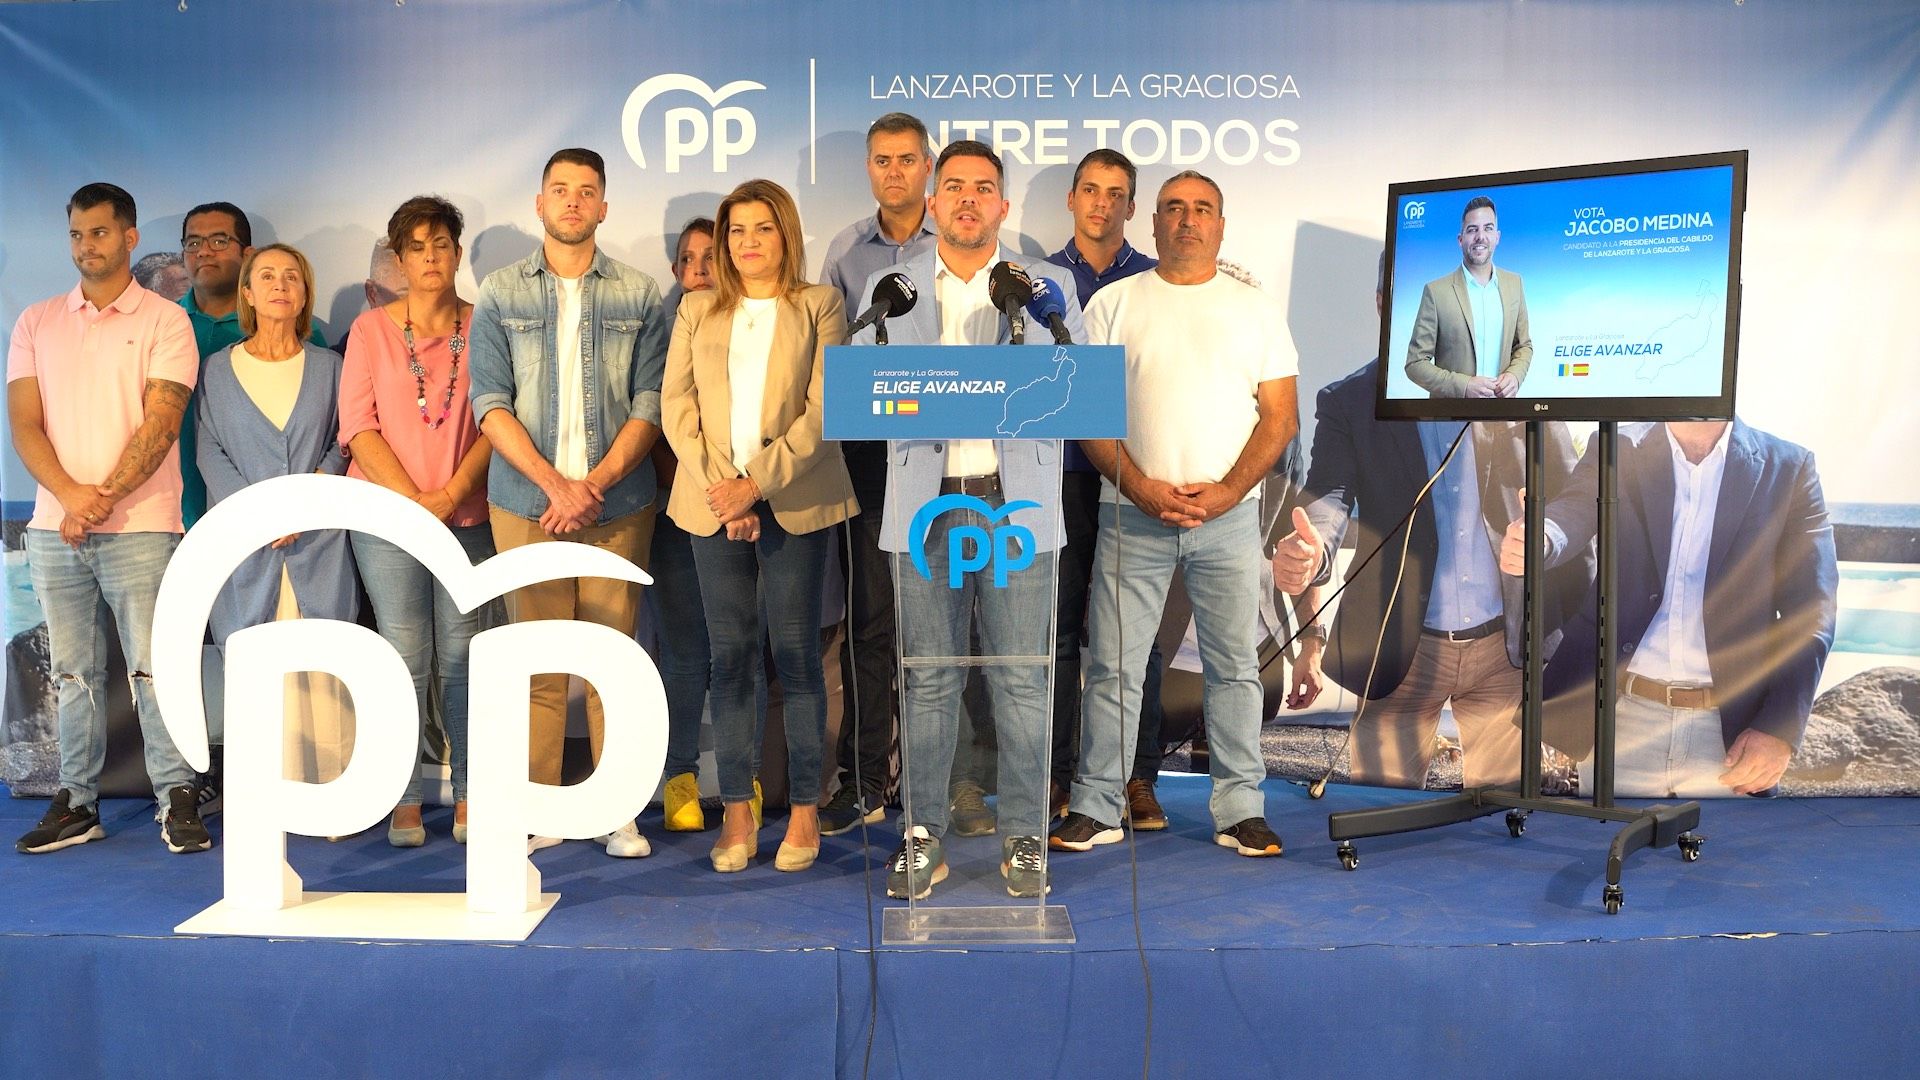 El candidato del Partido Popular al Cabildo de Lanzarote y La Graciosa, Jacobo Medina. Foto: Partido Popular.